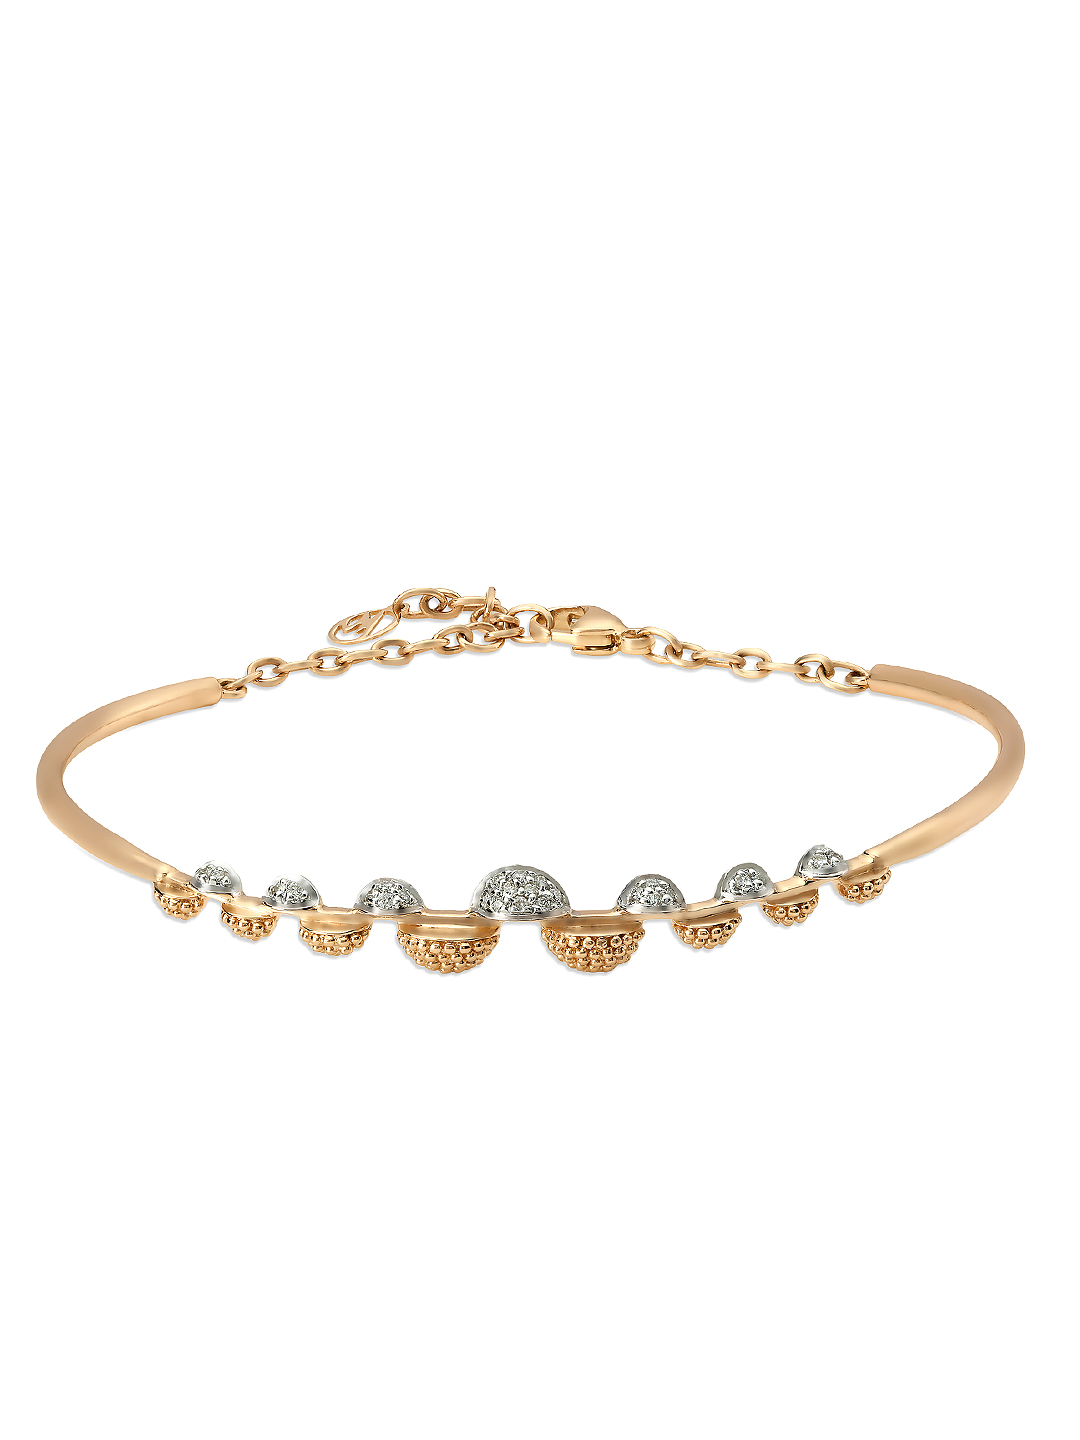 Buy Mia By Tanishq 6.96 G 14 Karat Gold Precious Bracelet With Diamonds &  Onyx Cabochon - Bracelet Diamond for Women 1358744 | Myntra